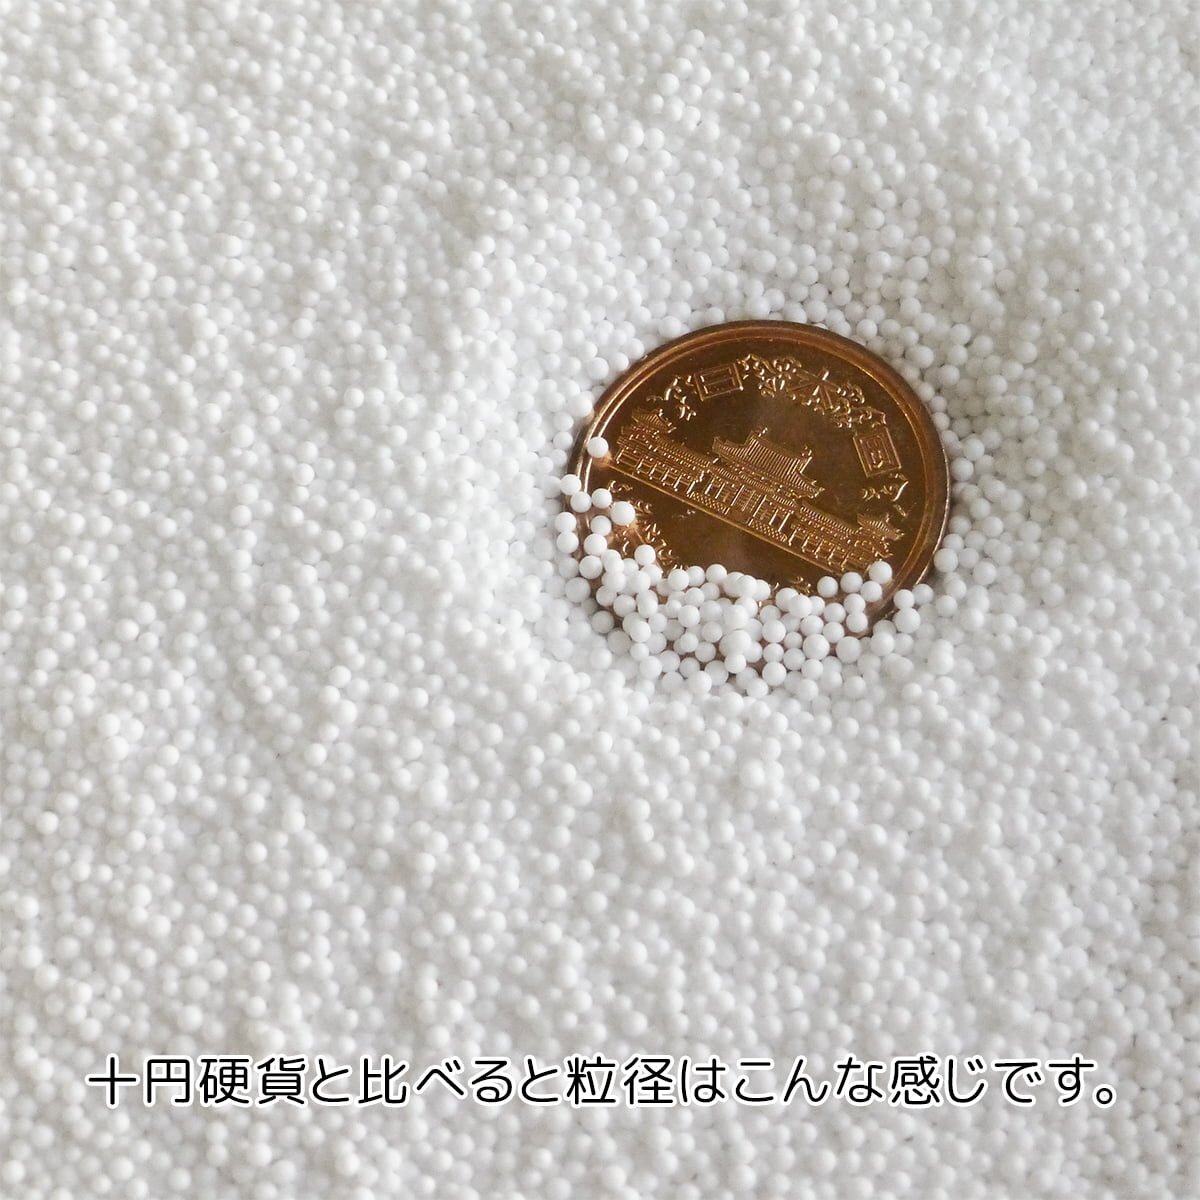 補充用 マイクロ ビーズ 1kg 500g 2袋 日本製 粒径 1mm前後 充填用 ビーズクッション ビーズソファ 発泡ポリスチレンの画像2